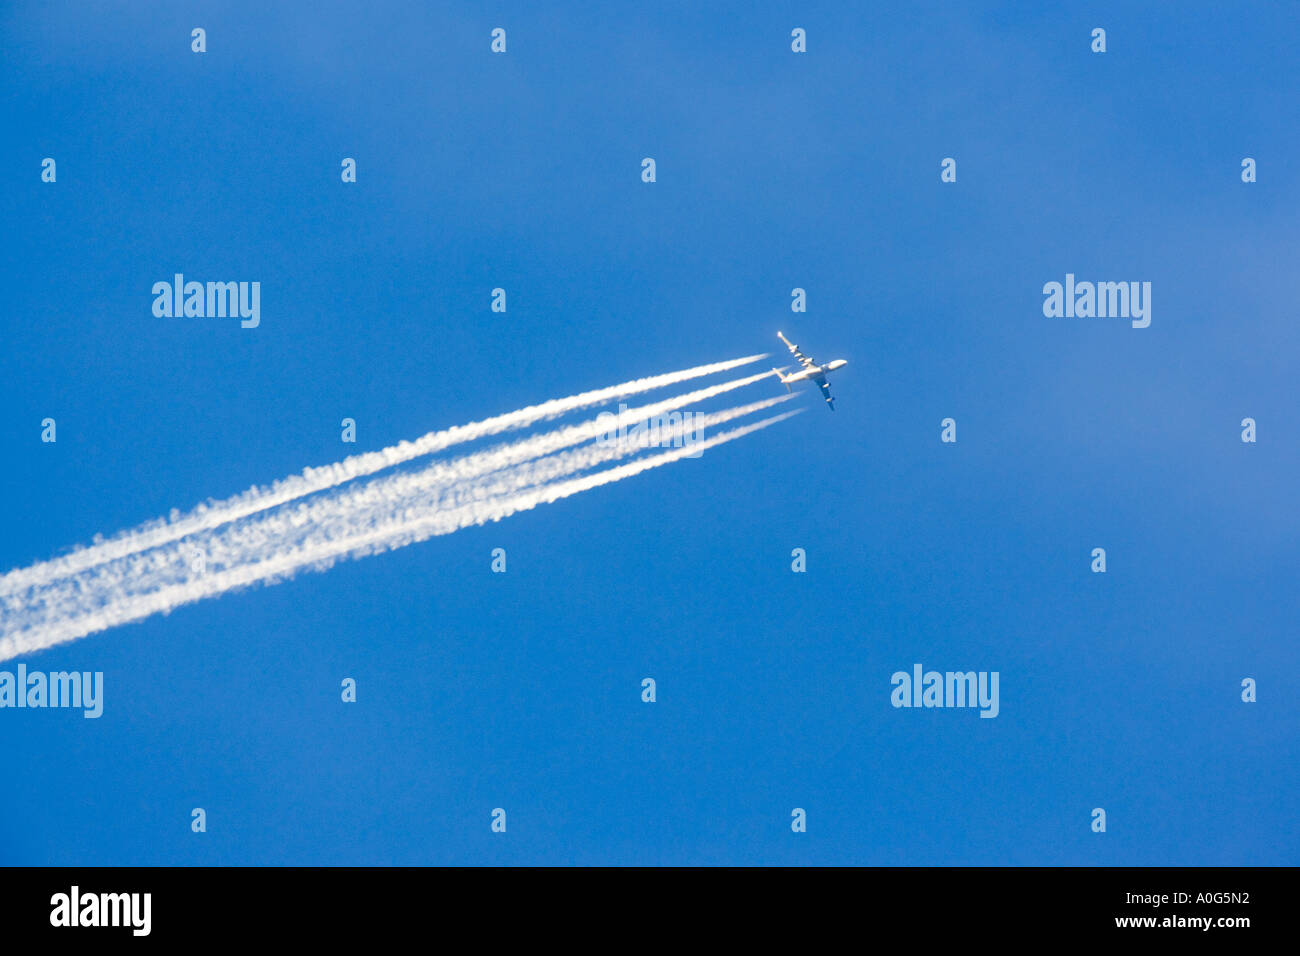 Flugzeug-Kondensstreifen gegen schönen blauen Himmel norfolk Stockfoto